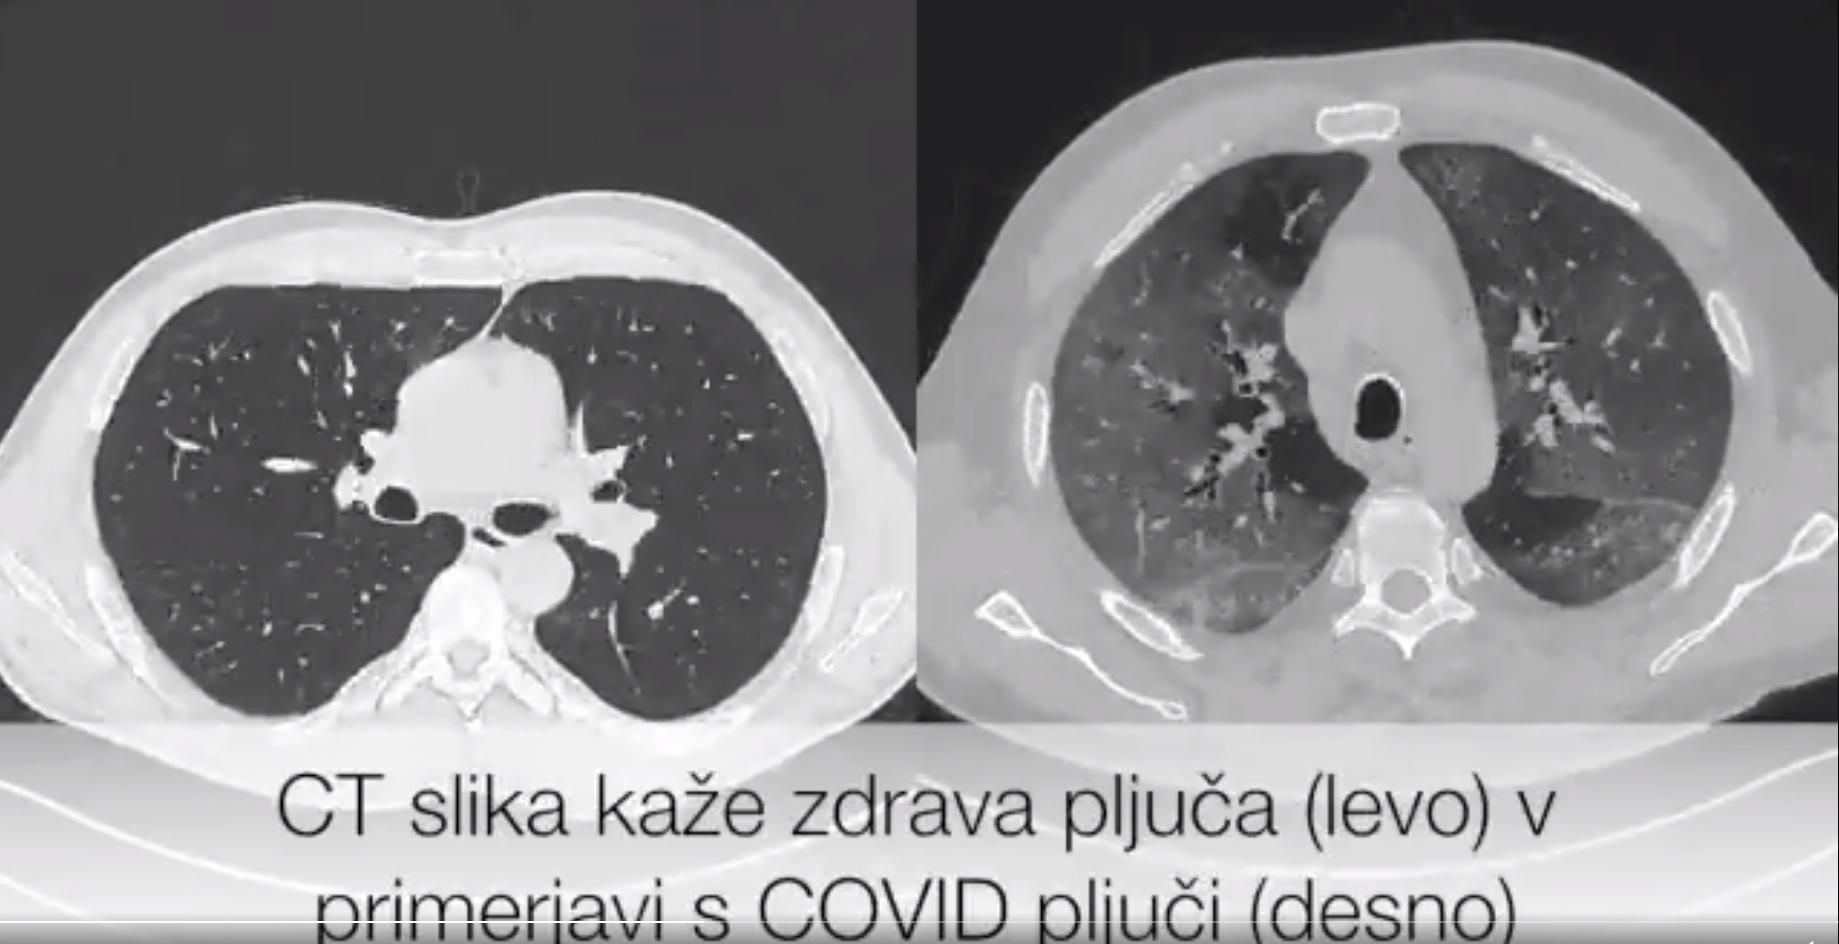 Pogledajte kako izgledaju pluća osobe s koronavirusom nasuprot zdravih pluća